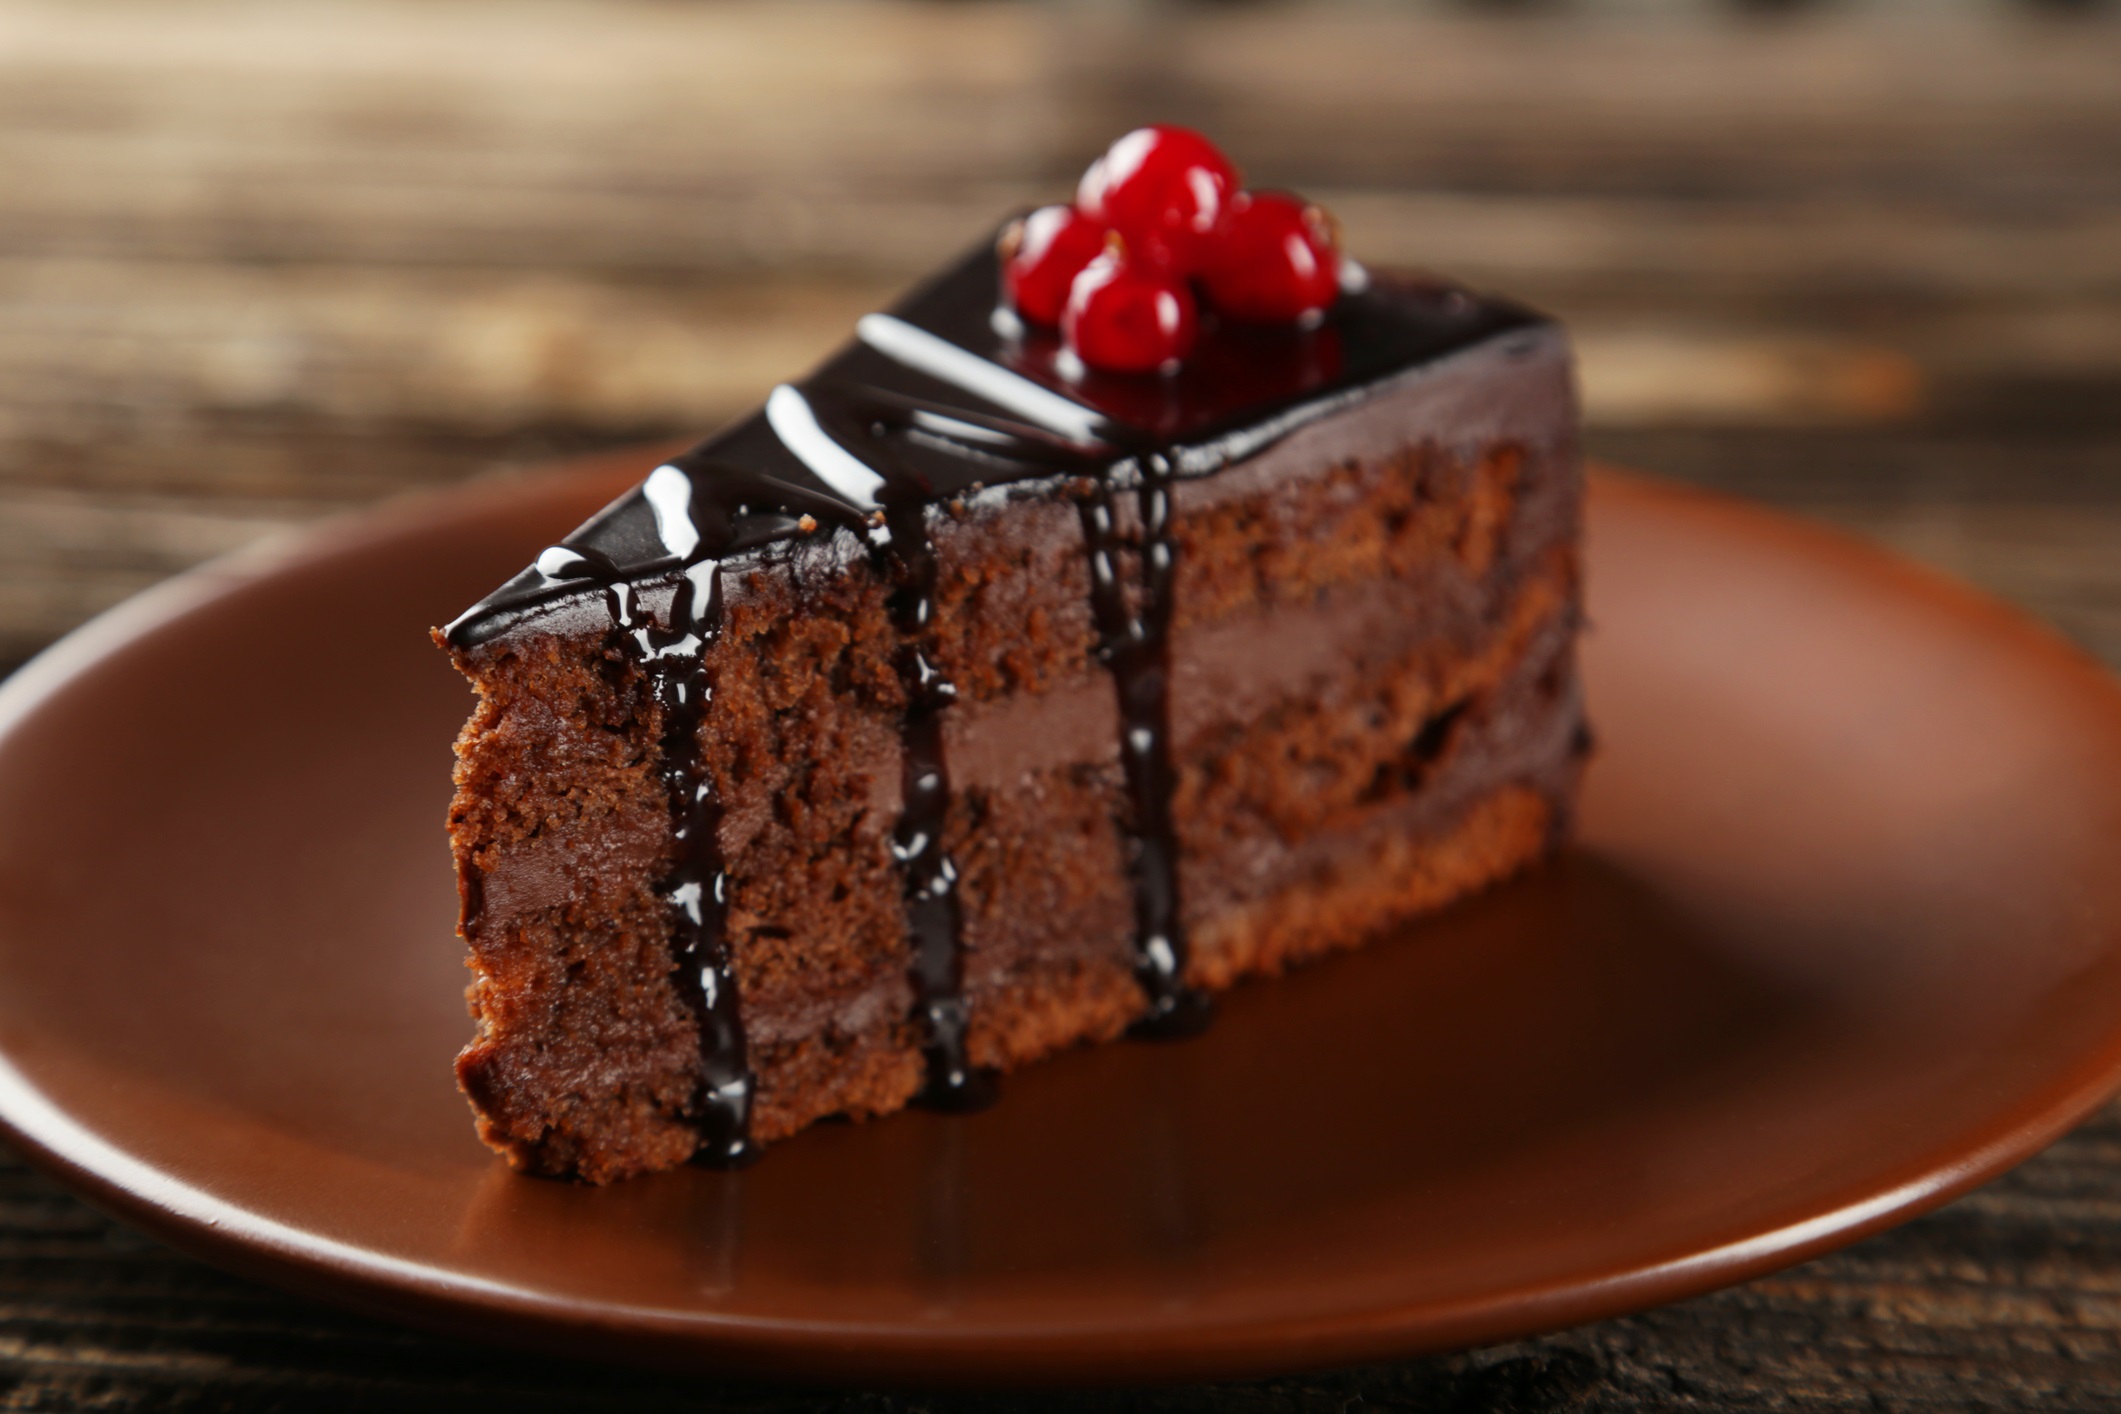 Сутринта е най-доброто време за консумиране на сладки неща, тъй като именно тогава метаболизмът е най-активен. Според последното проучване най-подходящата закуска далеч не е мюсли или плод, а именно шоколадова торта.